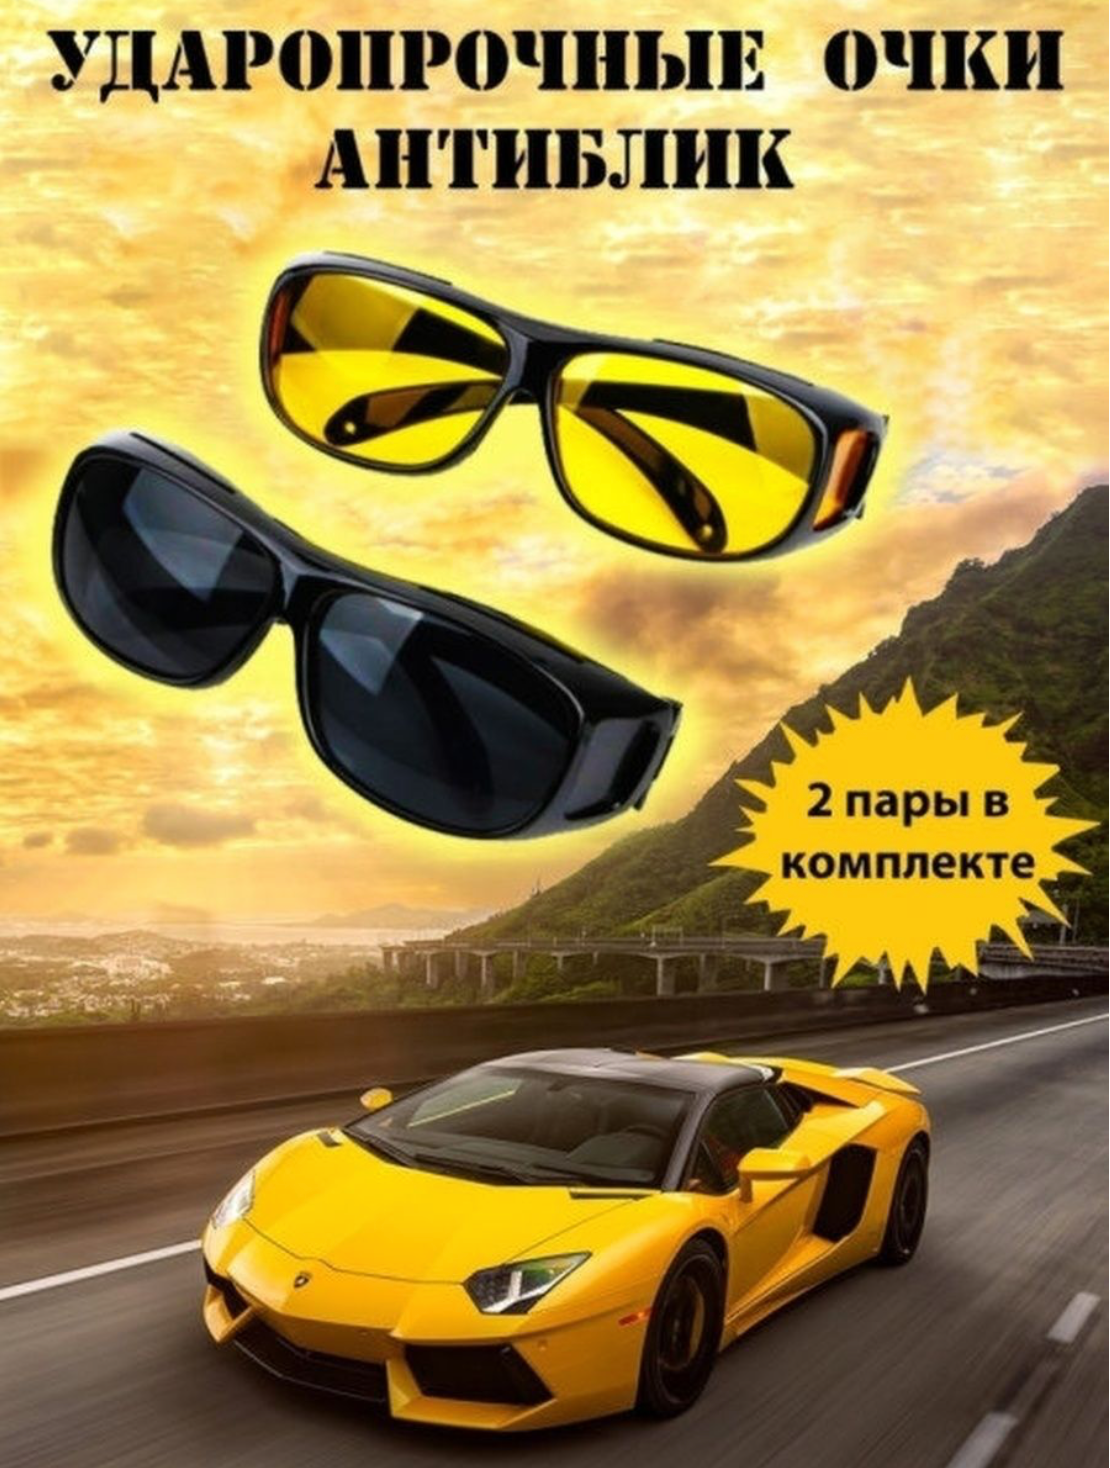 Очки антибликовые для водителя / солнцезащитные антибликовые очки для вождения, рыбалки, охоты, спорта (2 пары очков)